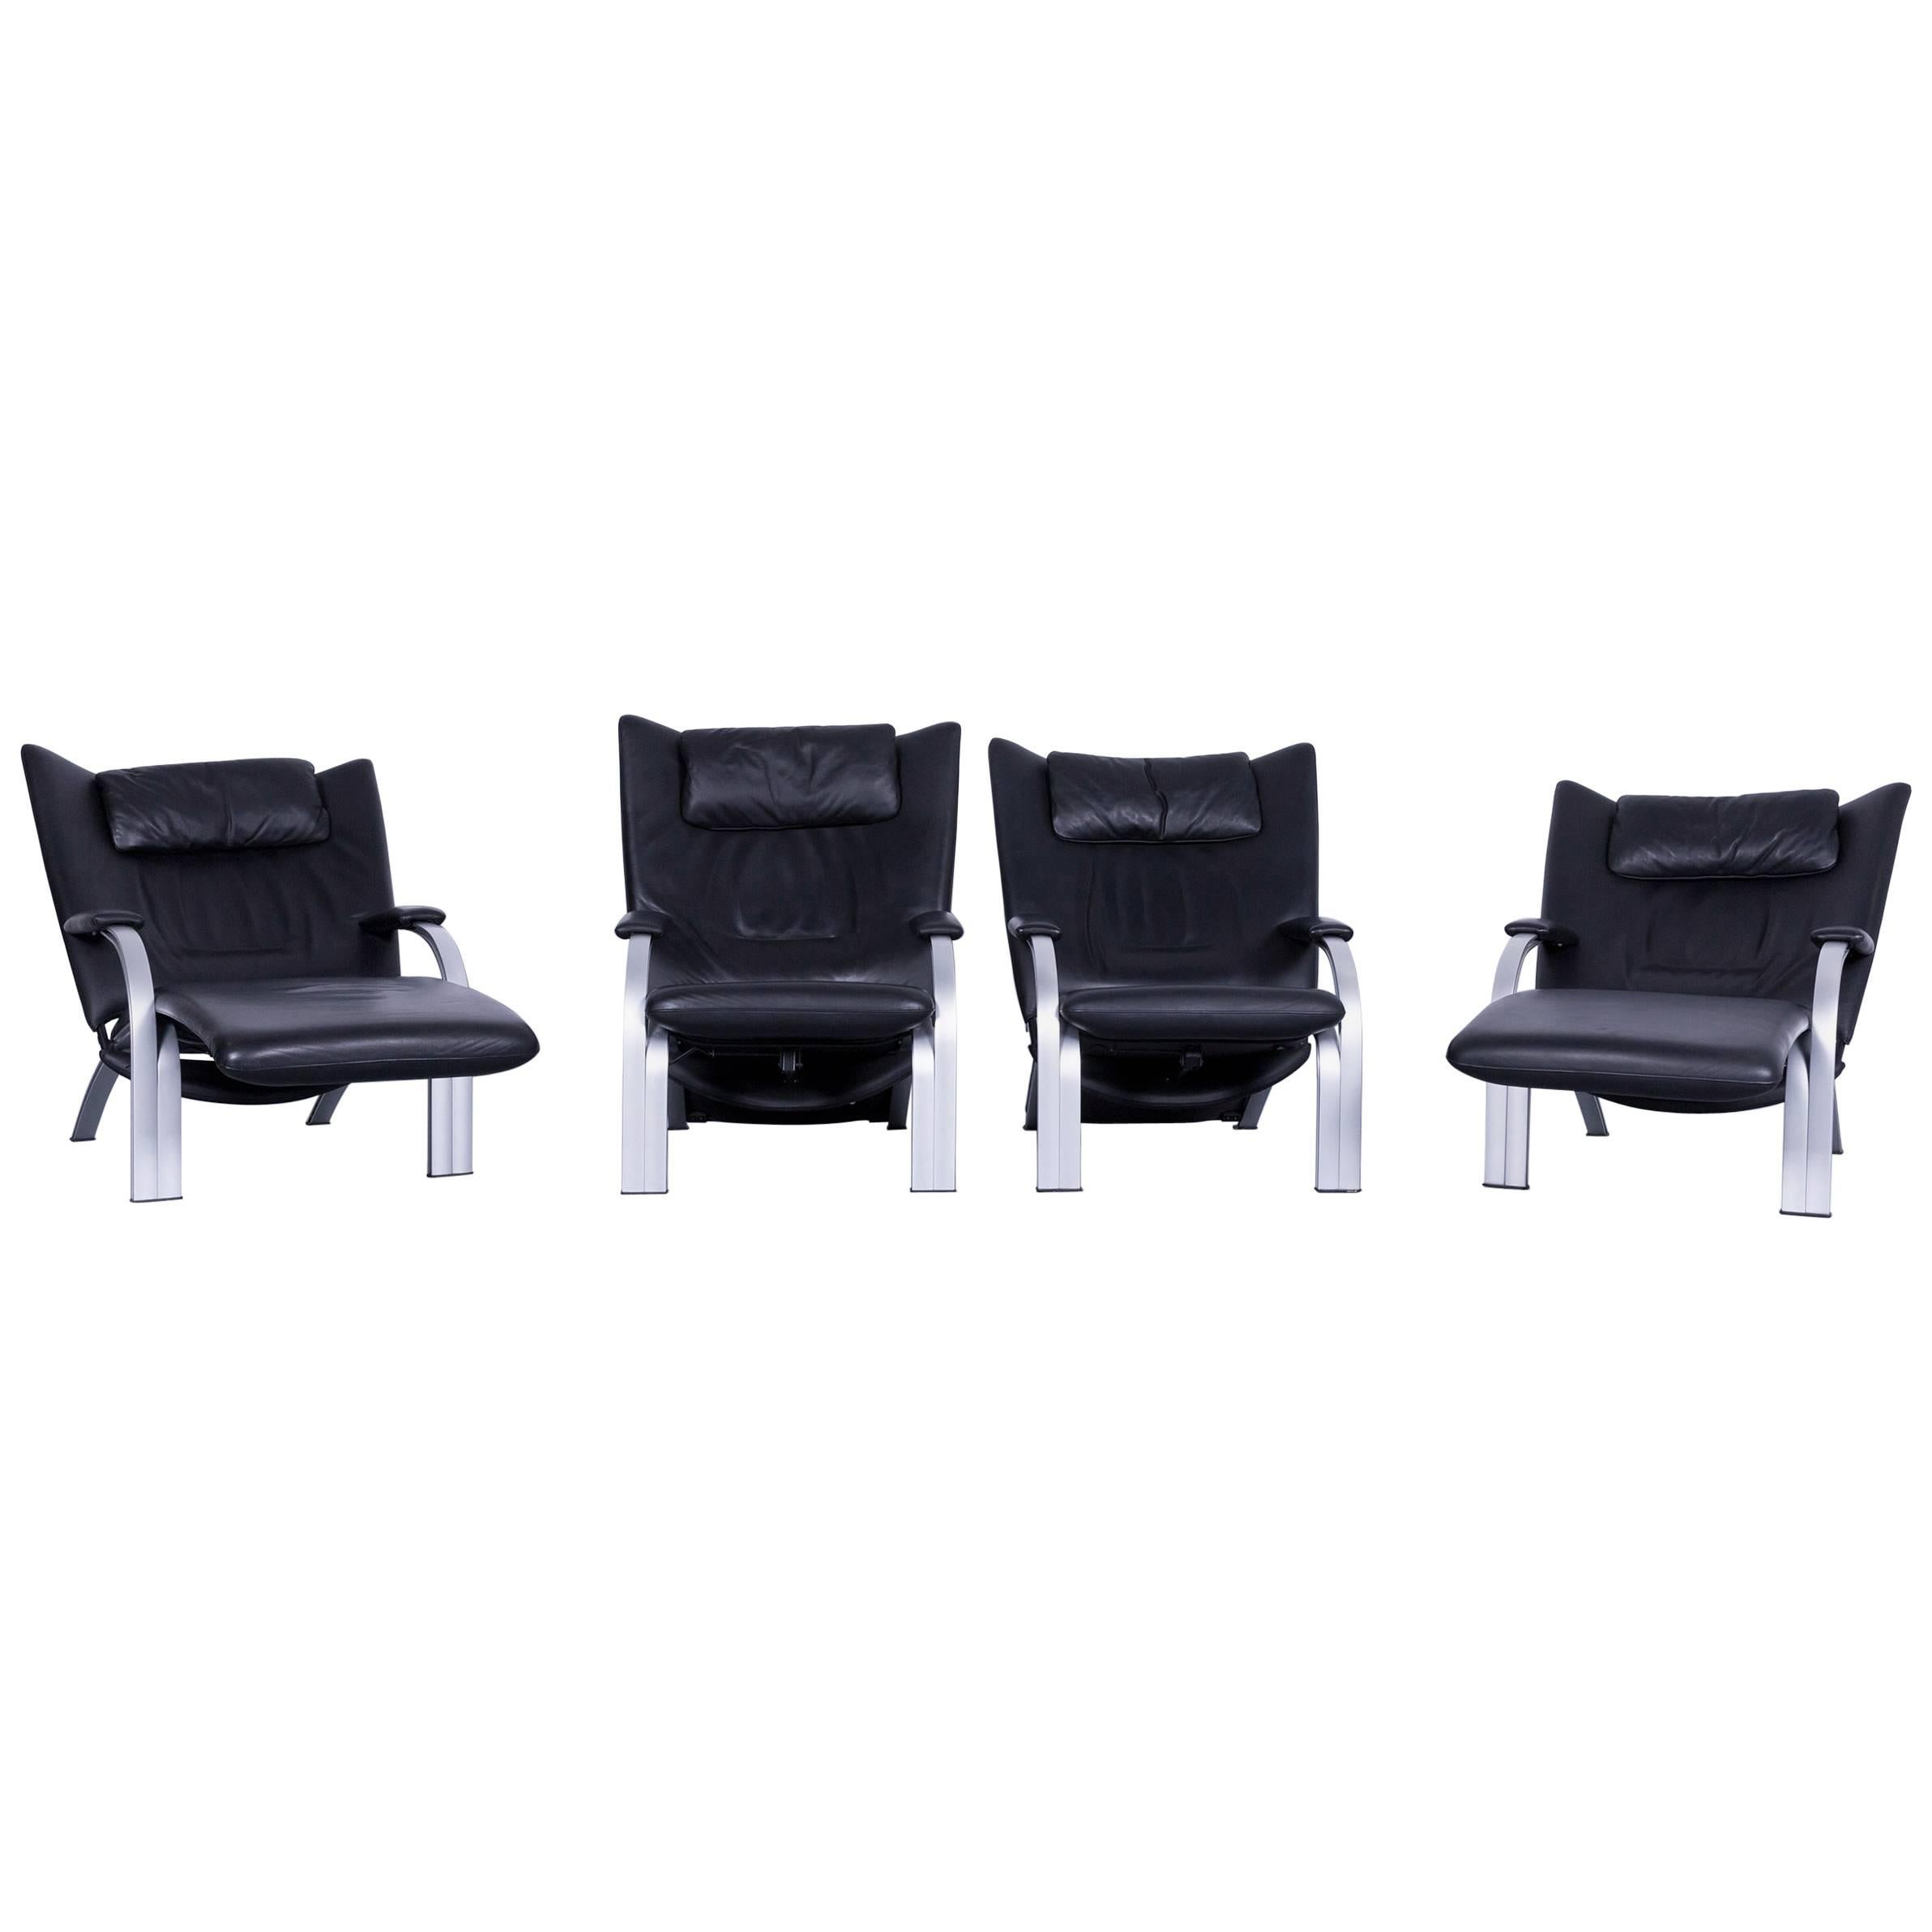 WK Wohnen Spot 698 Designer Leather Couch Black Armchair One-Seat